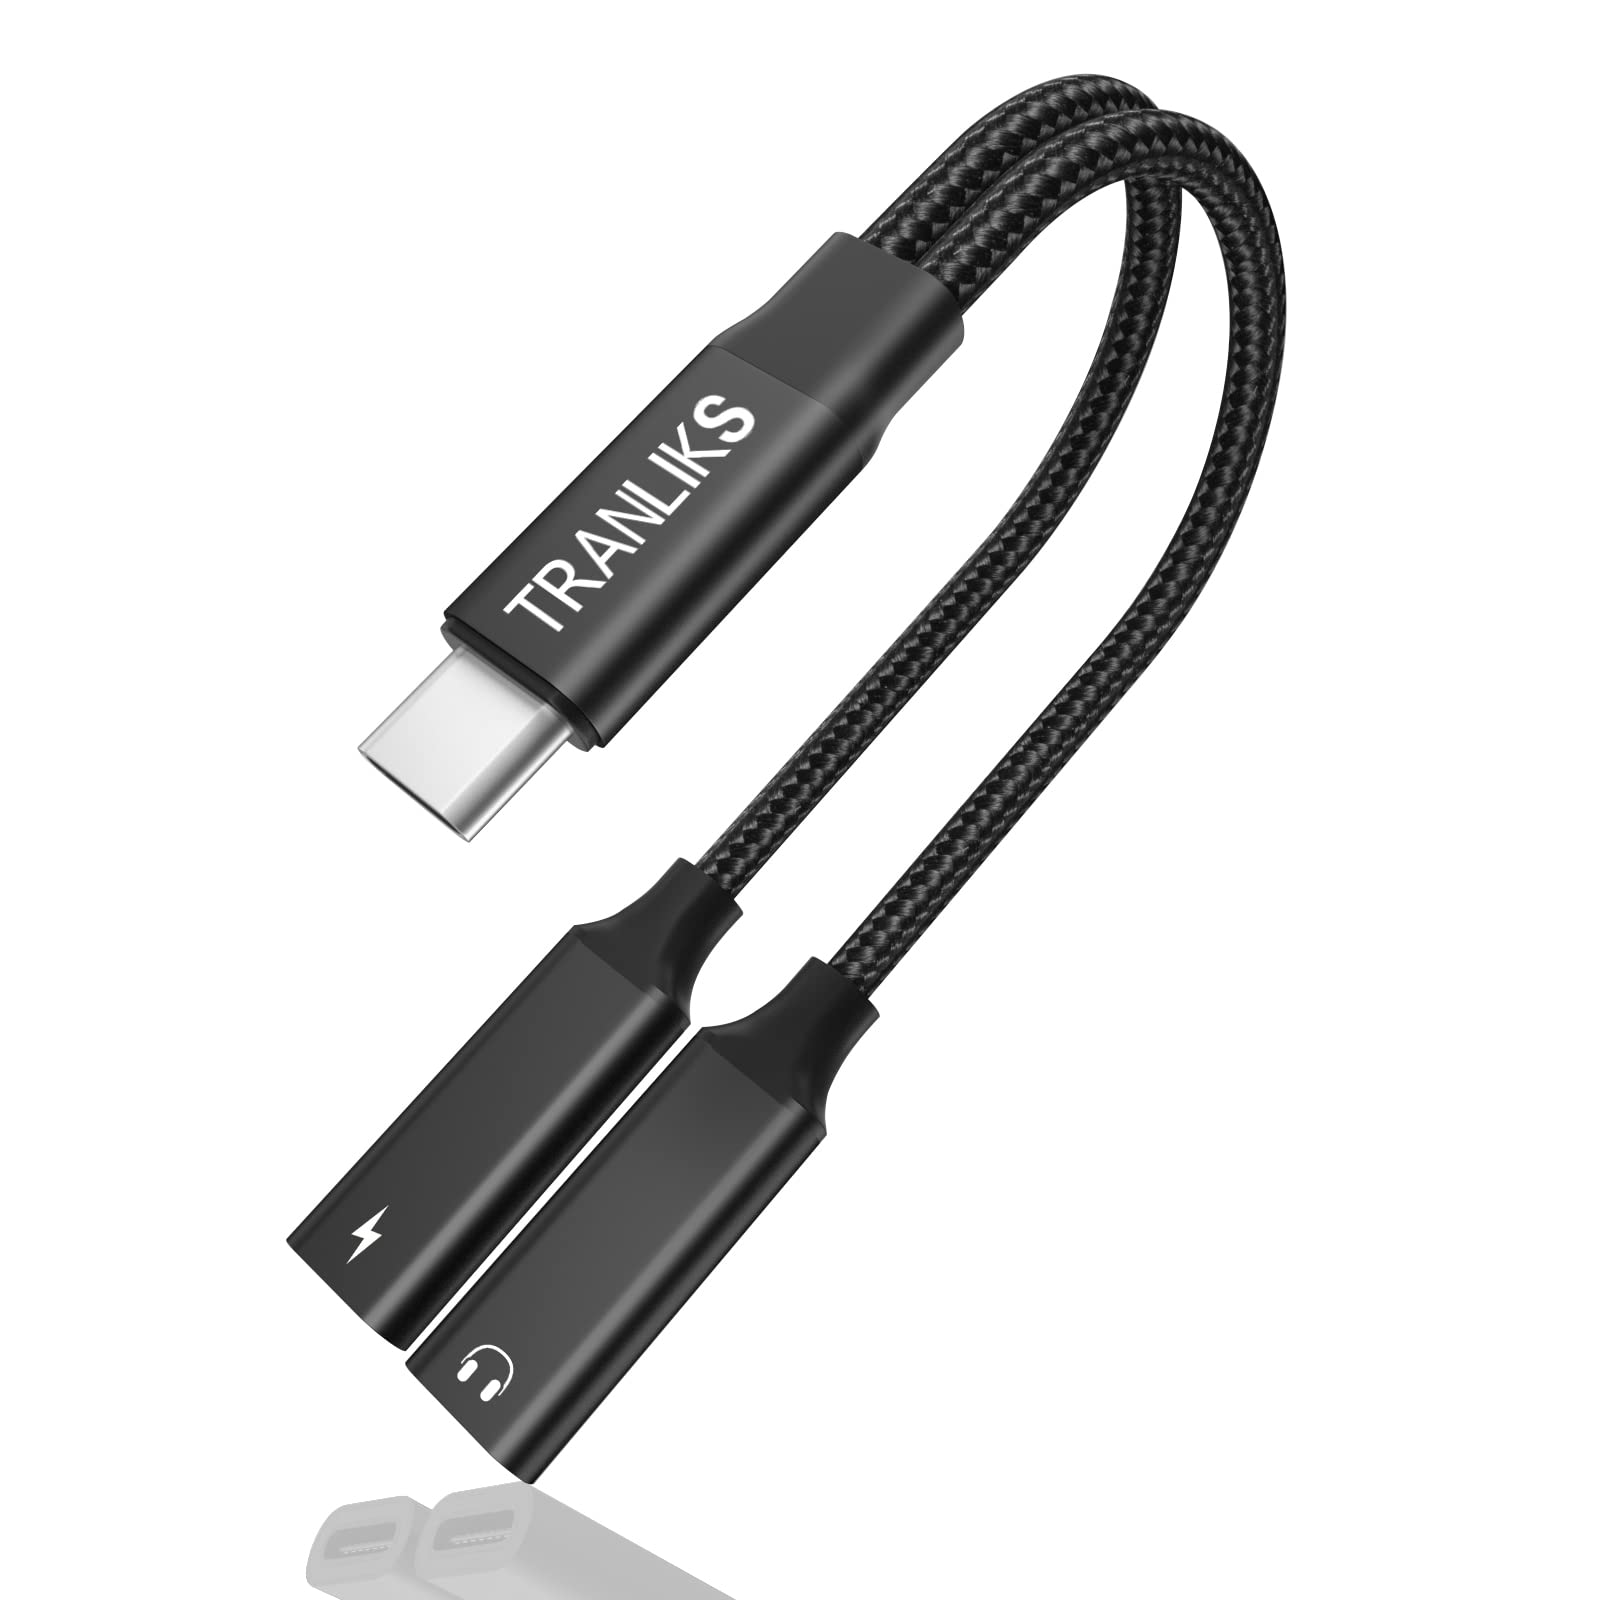 Lösungen für USB-C-Anschlussprobleme
USB-C-Adapter und -Kabel